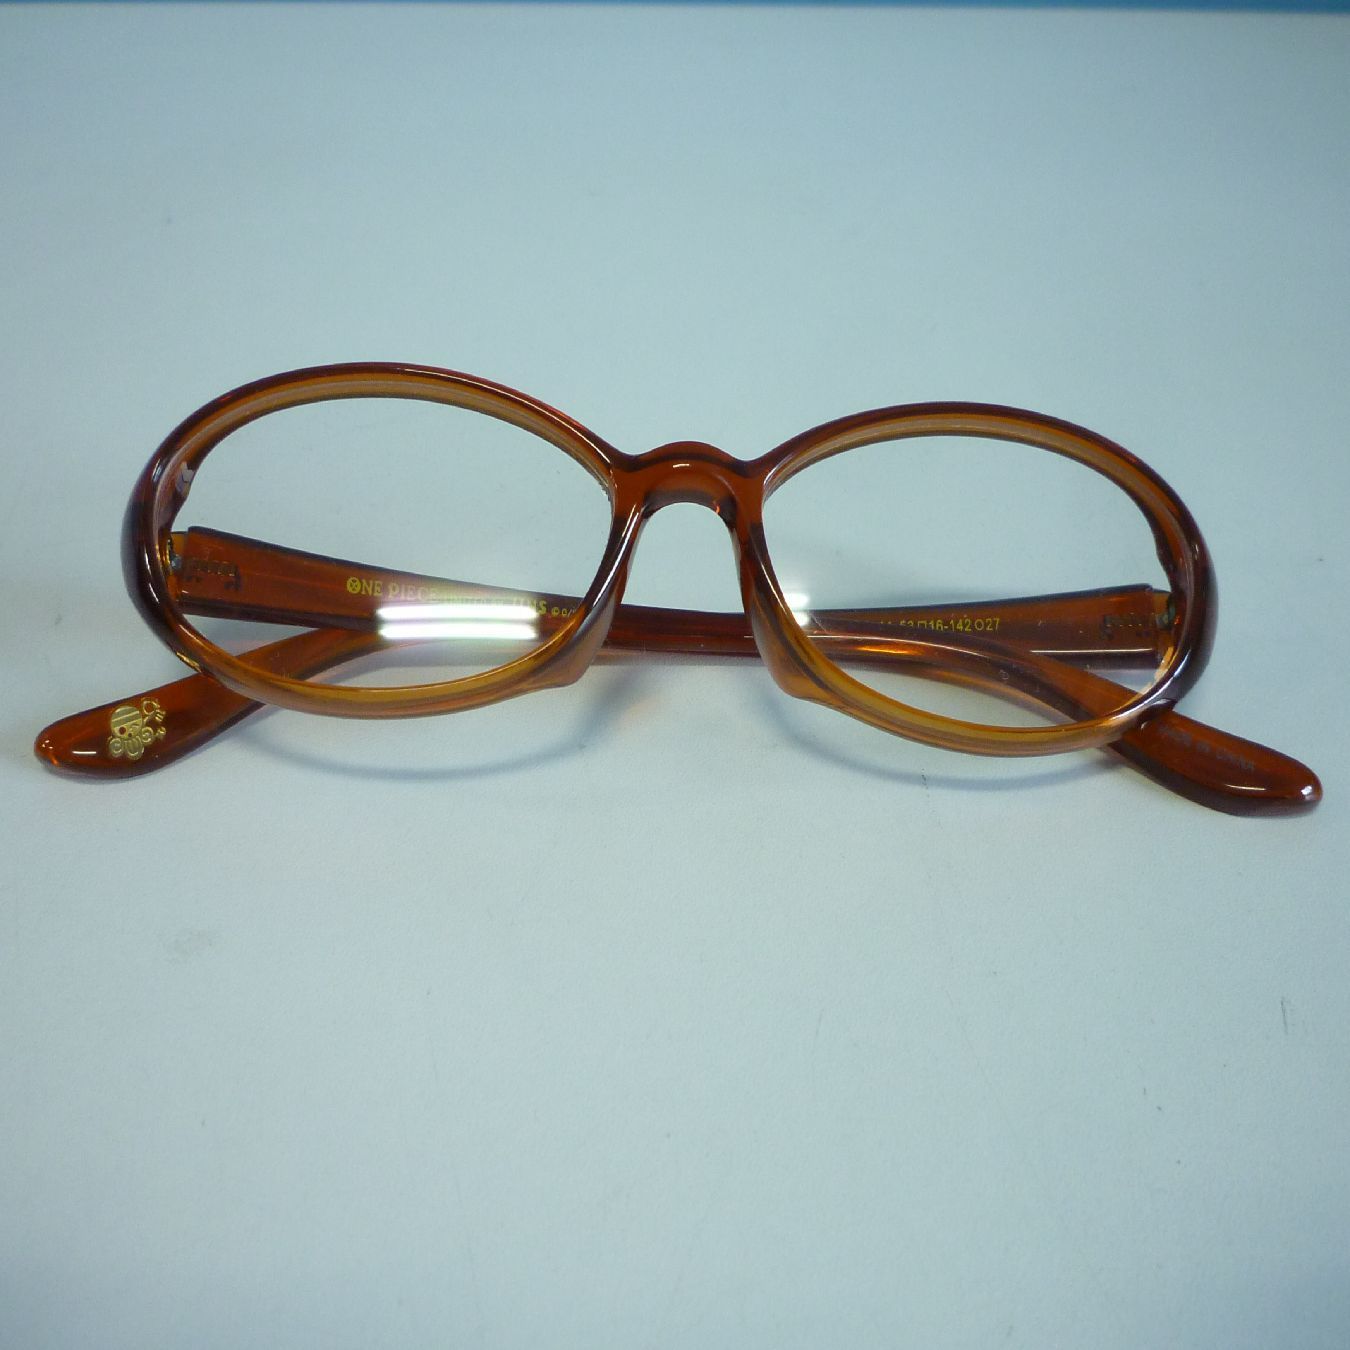 ワンピース JINS 眼鏡 ナミモデル 度なし コラボ ONEPIECE op-003 14 53 □ 16-142 コラボ眼鏡 - メルカリ